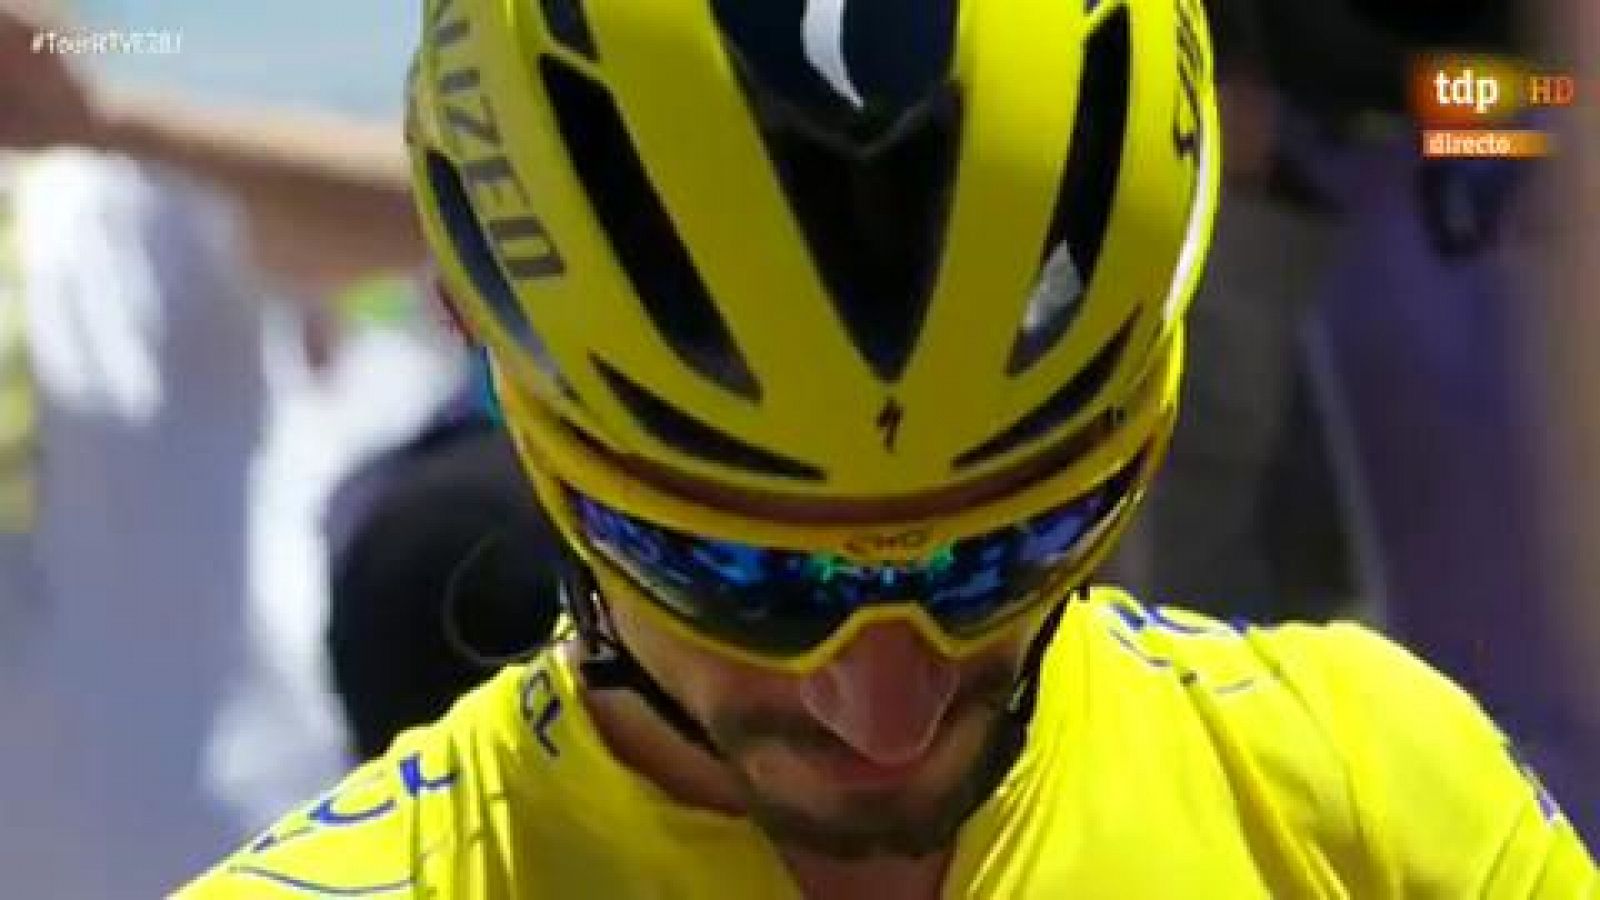 La euforia de toda Colombia por el primer maillot amarillo en el Tour firmado por su nuevo h�roe, Egan Bernal, se traslad� a los Campos El�seos de Par�s, al atardecer, para saludar la entrada de un joven de 22 a�os llamado a marcar una era en el cicl